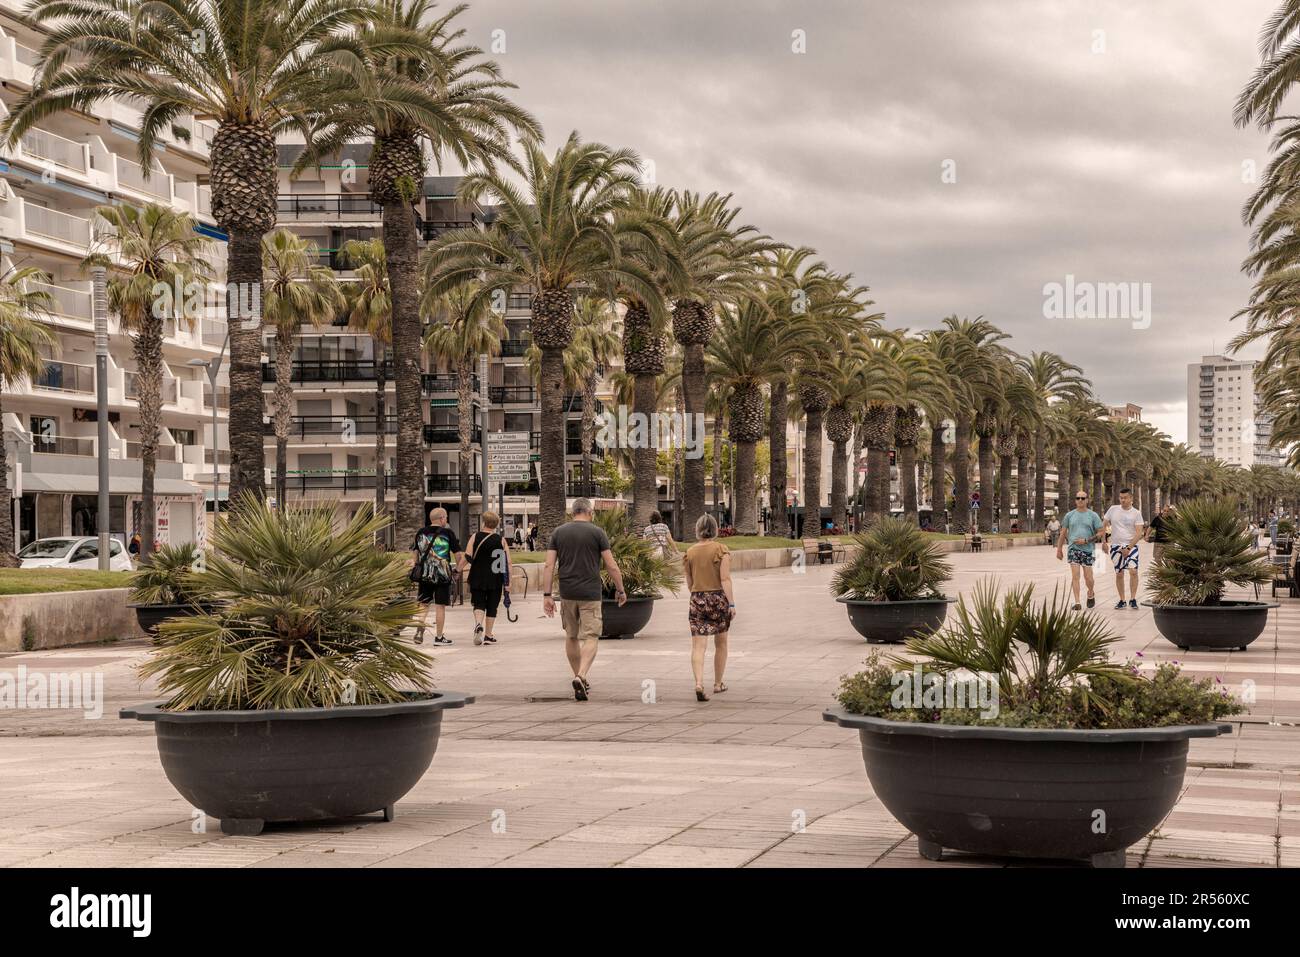 Palmen an der Promenade von Jaime I dem Conquistador in der Stadt Salou, Costa Daurada, Provinz Tarragona, Katalonien, Spanien Stockfoto